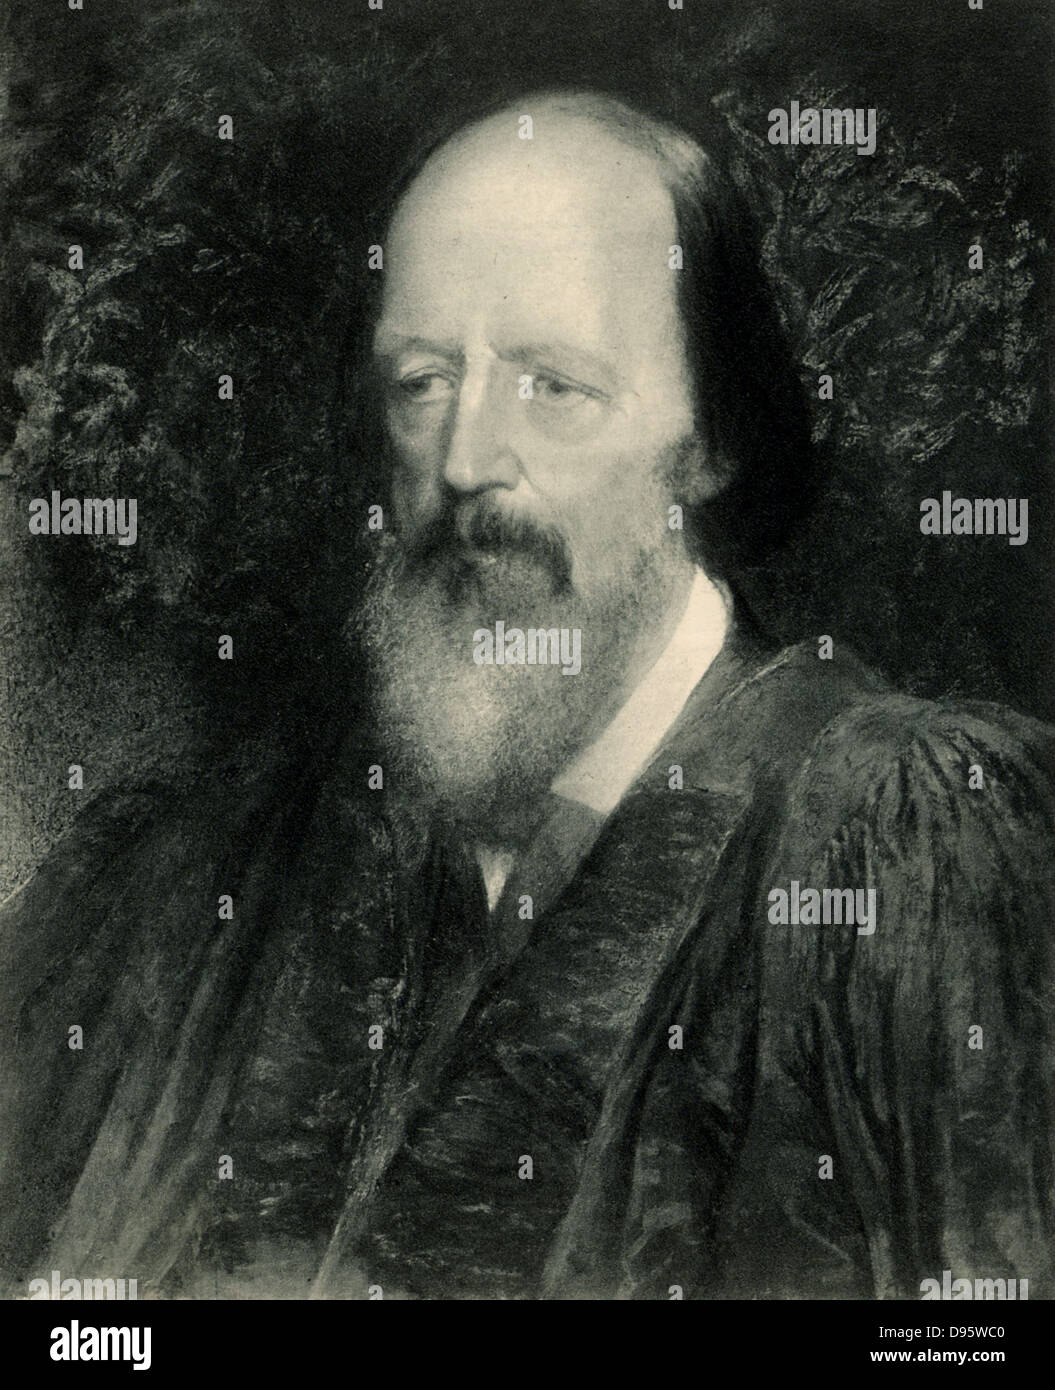 Alfred Lord Tennyson (1809-1892) poeta inglés. Poeta laureado de 1850. Litografía después del retrato de George Frederick Watts (1817-1904). Foto de stock